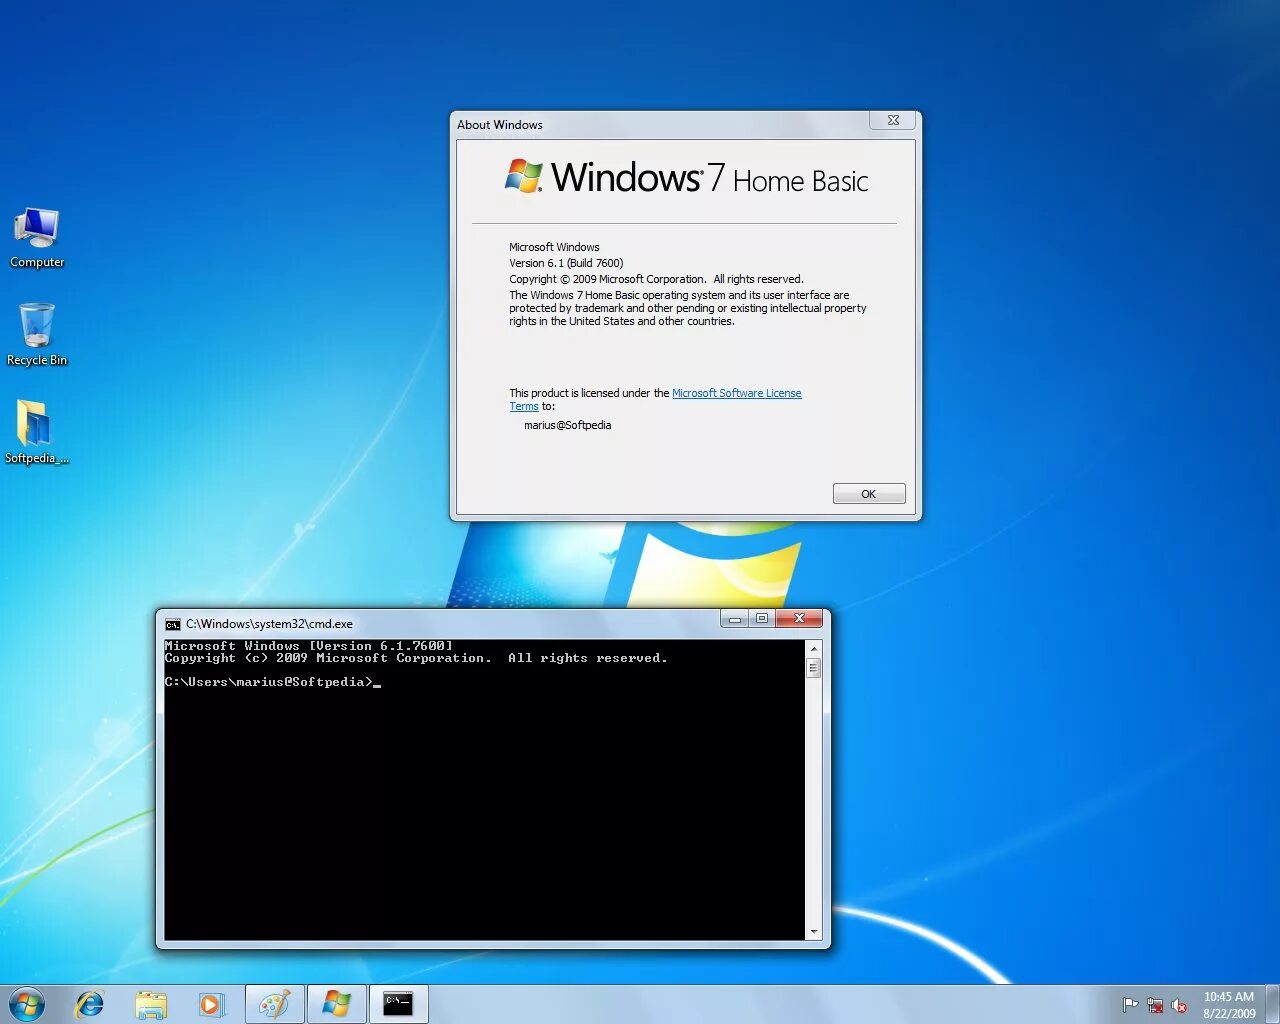 Windows 7 home basic oa. Windows 7 Home Basic. Windows домашняя Базовая. Windows 7 домашняя Базовая (Home Basic). Интерфейс виндовс 7 домашняя.